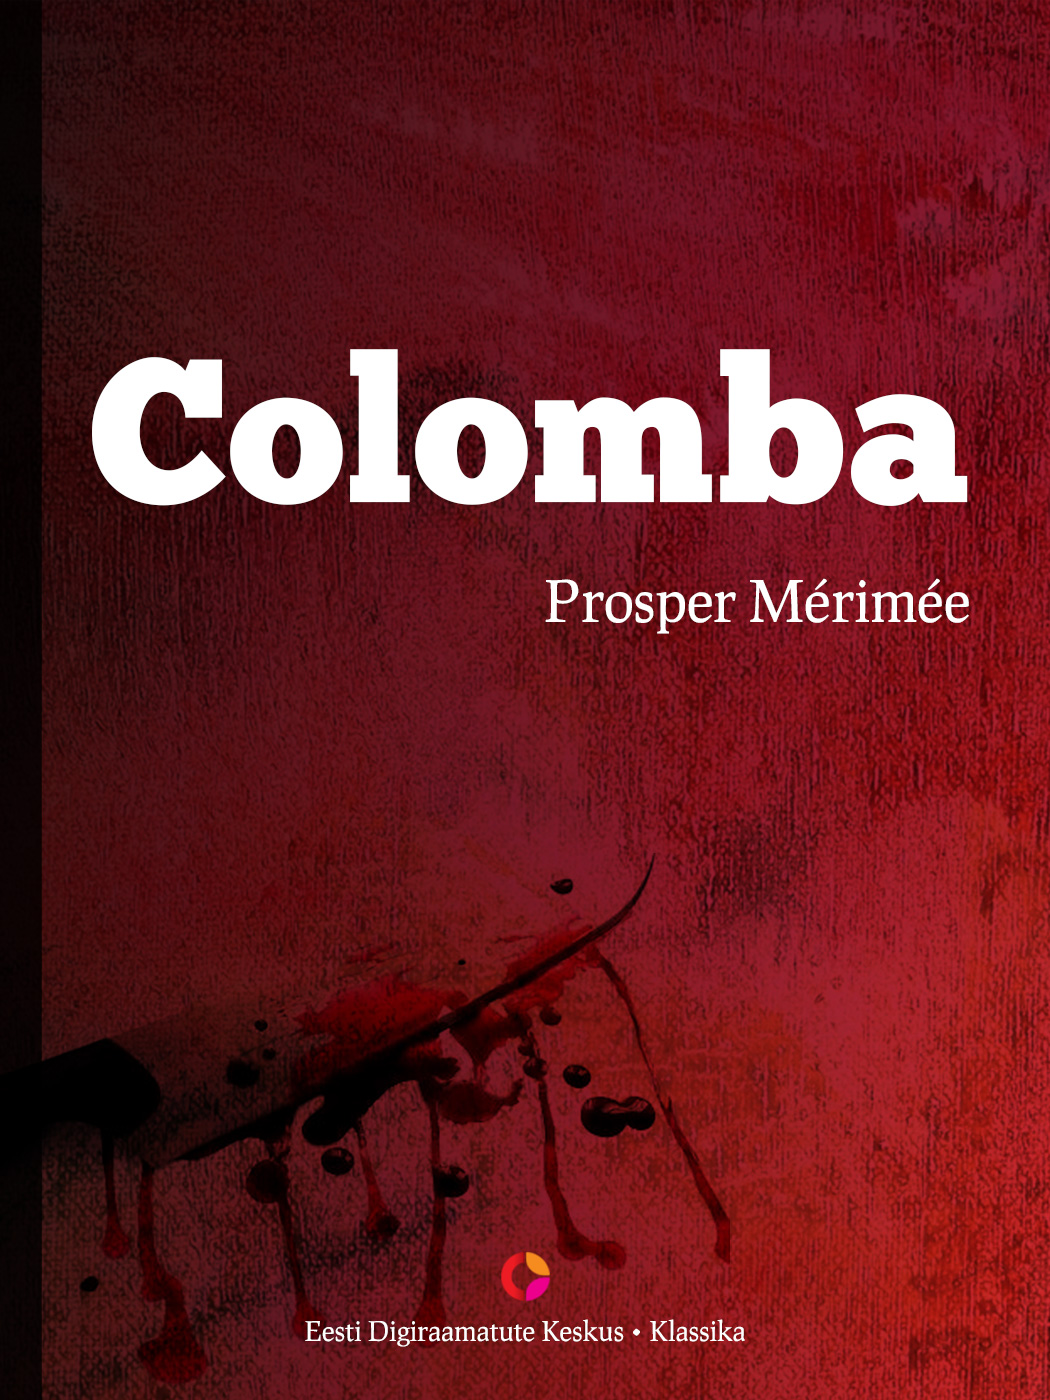 Книга Colomba из серии , созданная Prosper Merimee, может относится к жанру Зарубежная классика, Зарубежная старинная литература. Стоимость электронной книги Colomba с идентификатором 21183652 составляет 212.63 руб.